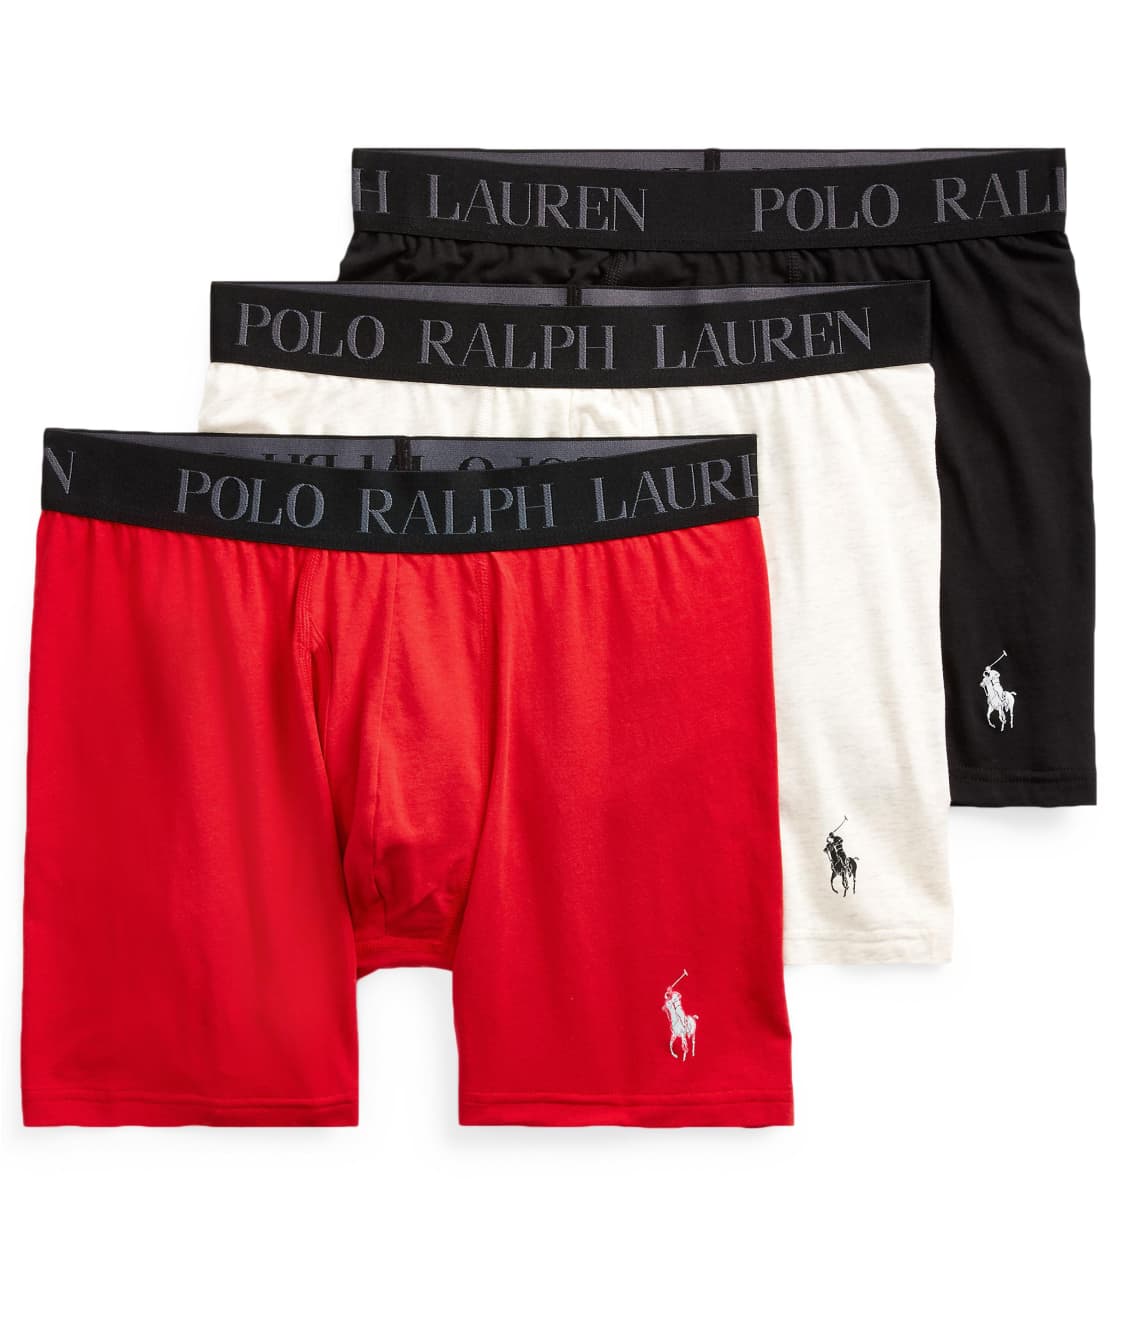 Polo Ralph Lauren: 4D-Flex Stretch Cotton Boxer Brief 3-Pack LABBP3